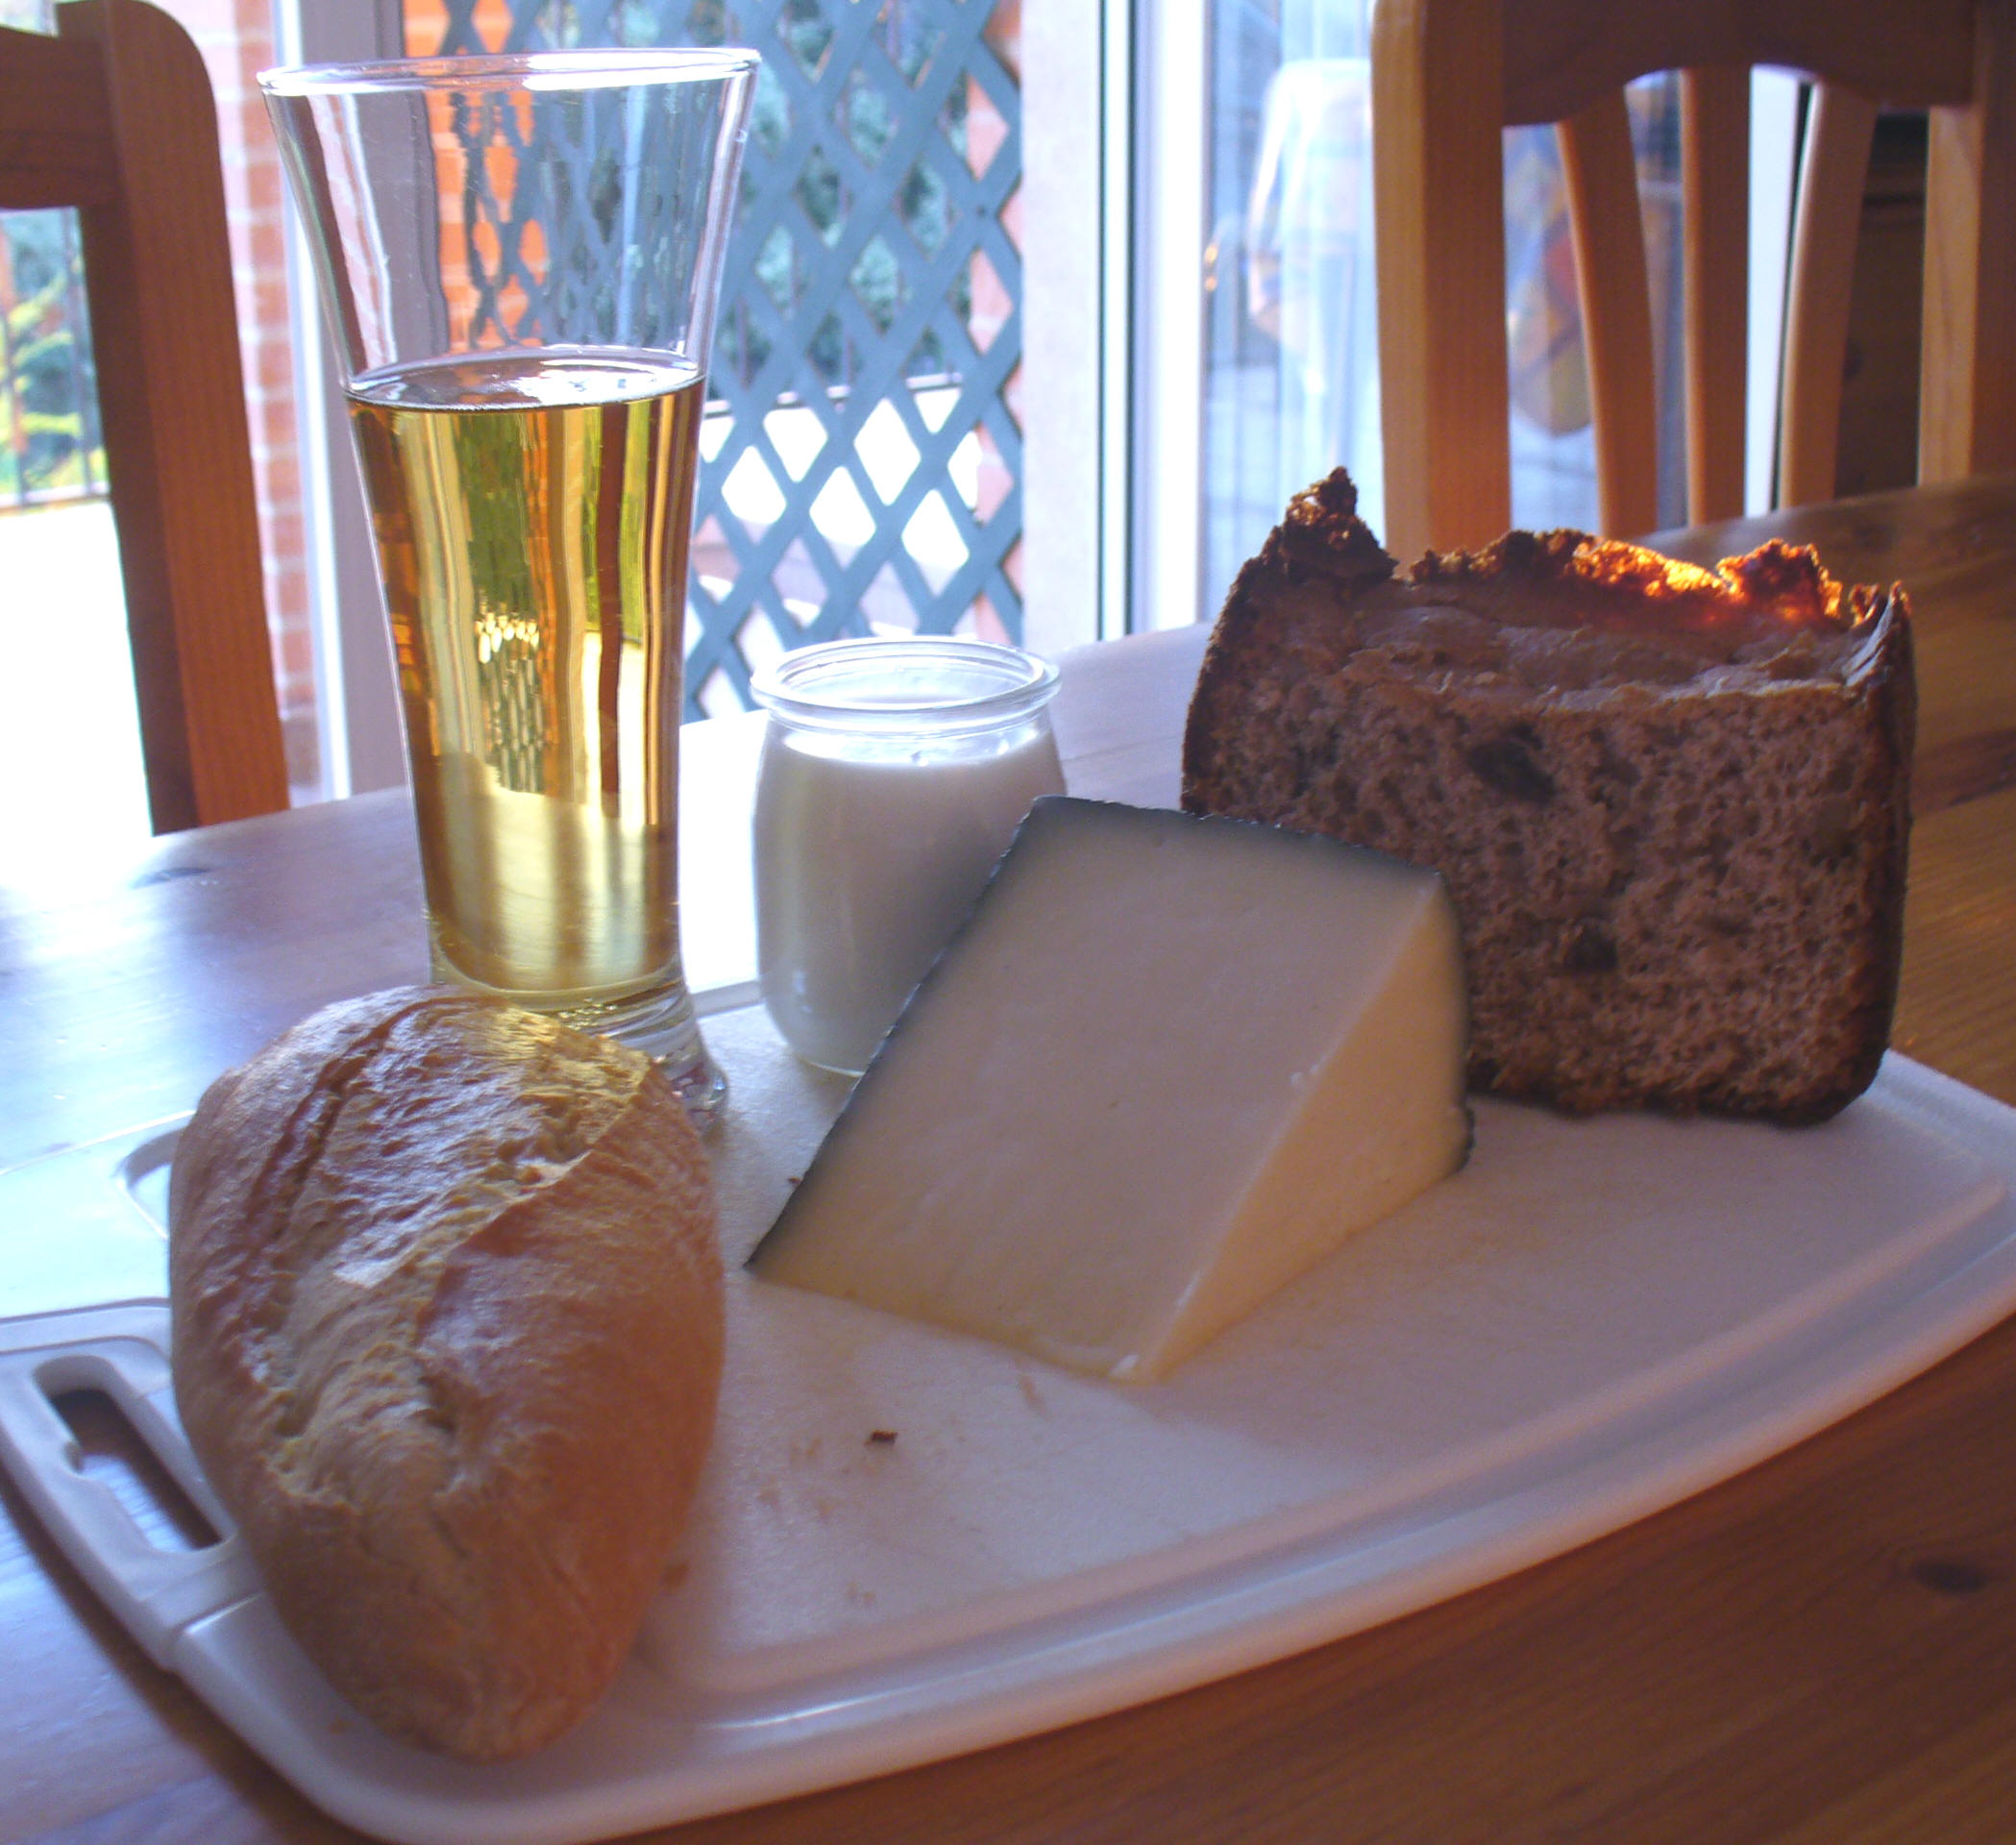 La cerveza, el pan, el queso y el yogur se crean a partir de los procesos de fermentación que realizan diversos microorganismos.